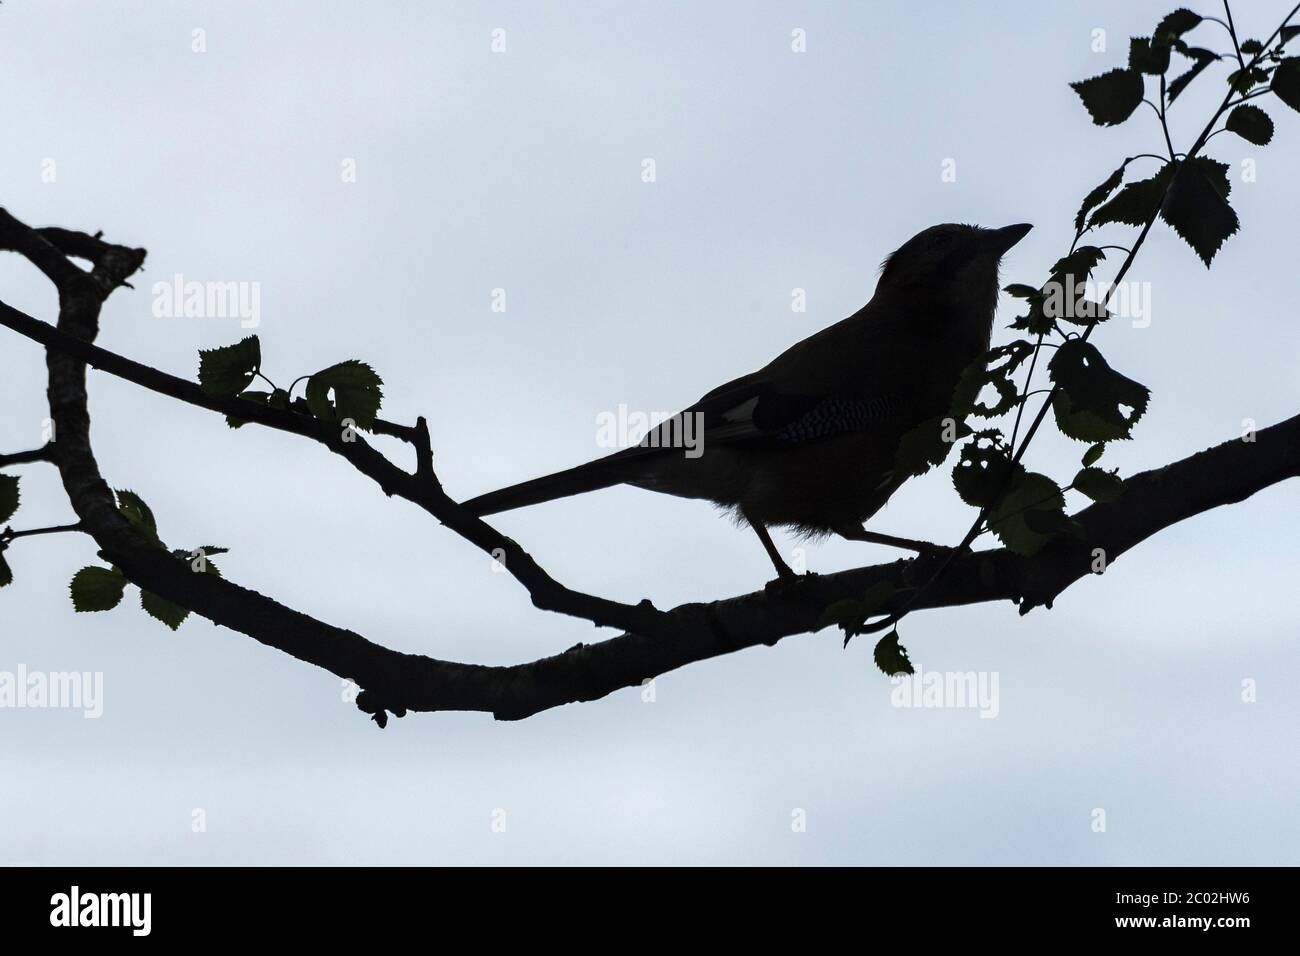 Geai commun silhoueté reposant sur une branche d'arbre. Banque D'Images